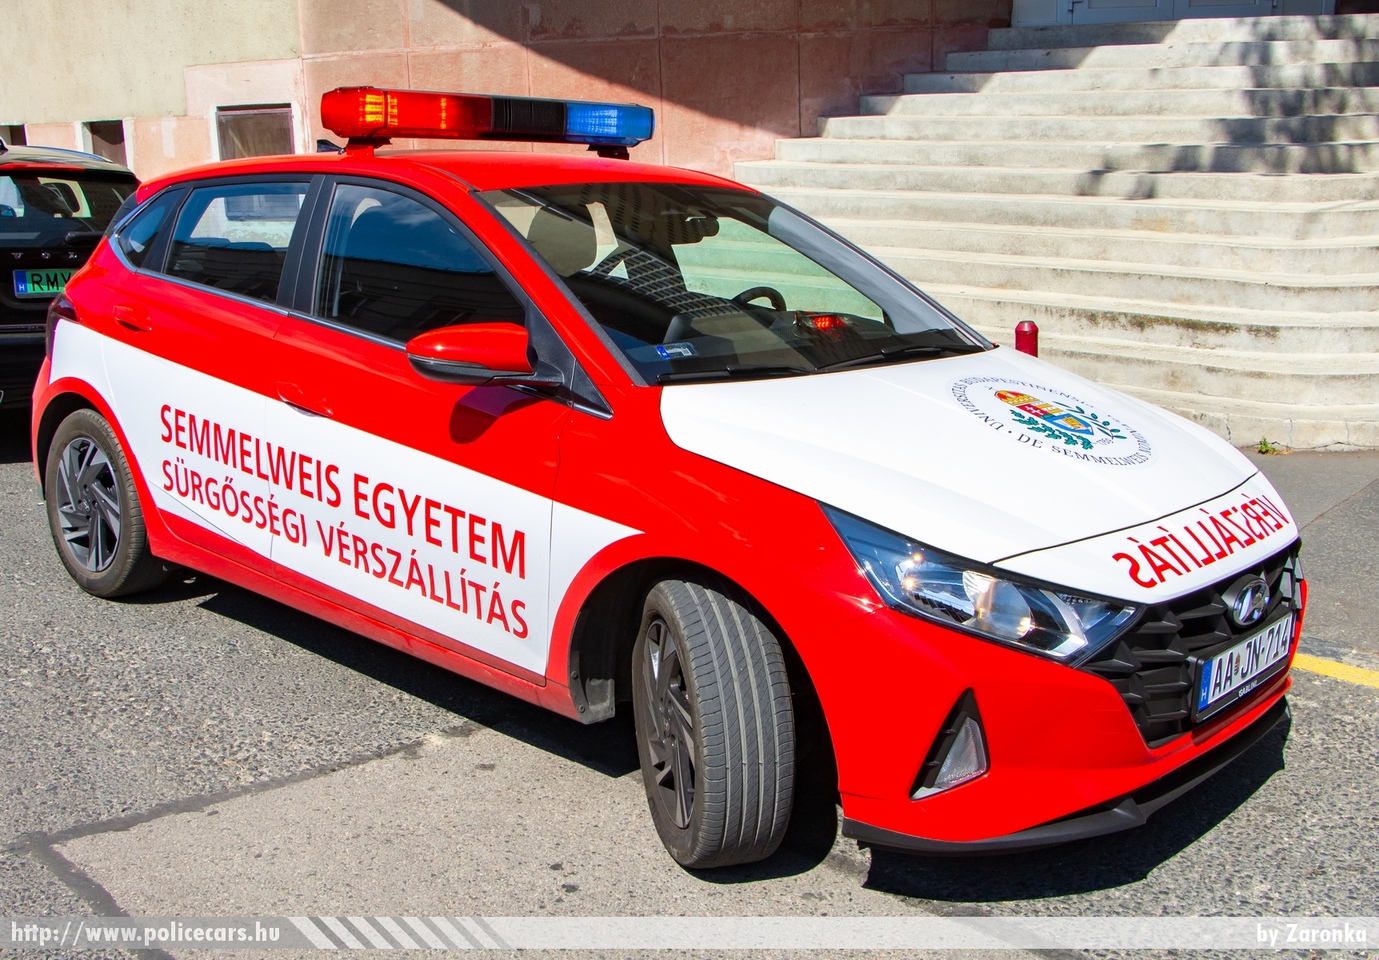 Hyundai i20, sürgõsségi vérszállítás, Semmelweis Egyetem, fotó: Zaronka
Keywords: mentő magyar Magyarország mentőautó ambulance Hungary hungarian AAJN-714